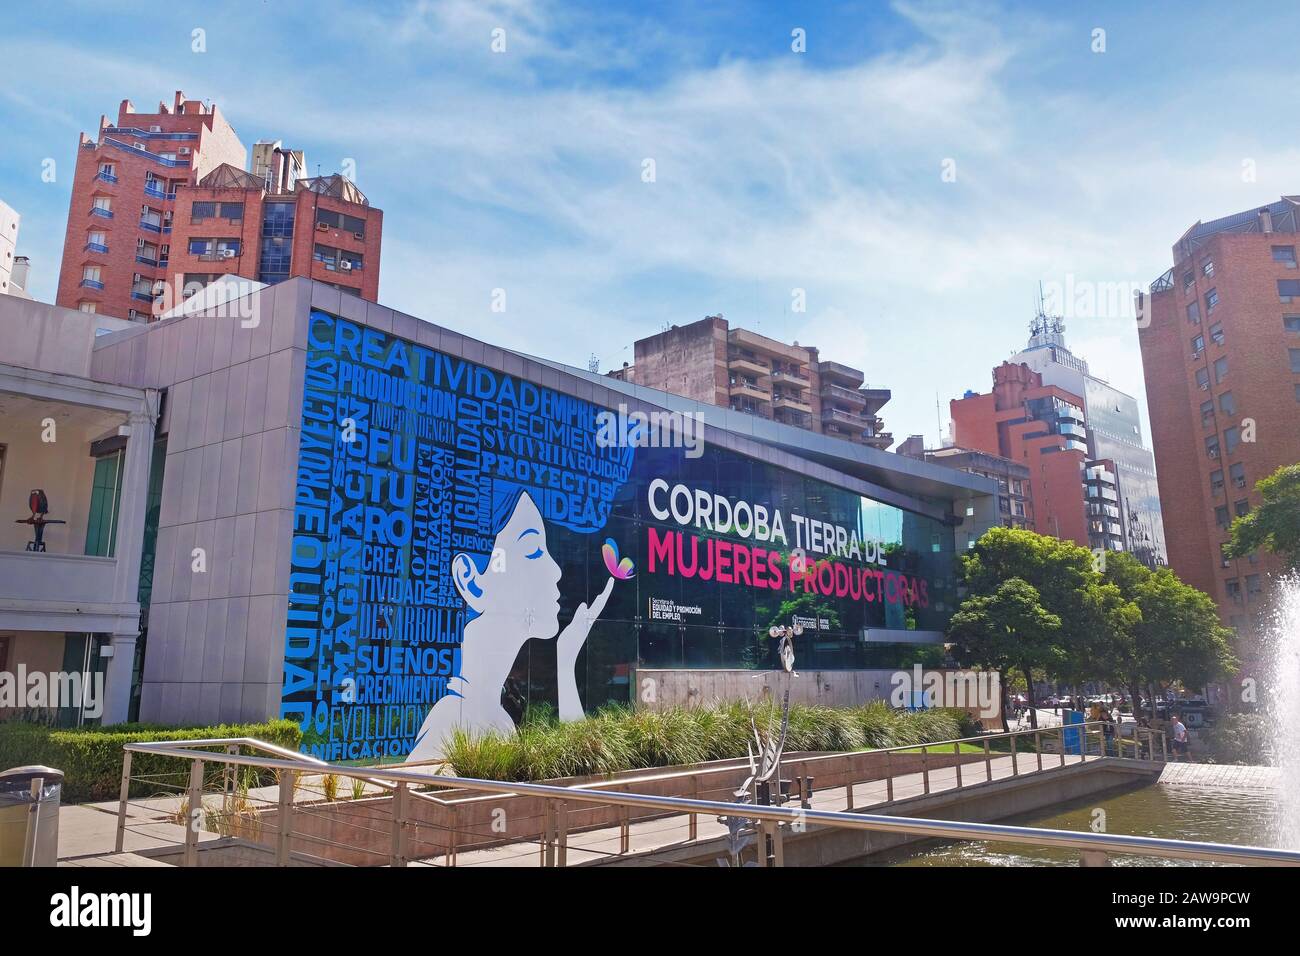 Riesige Werbung auf einem modernen Gebäude im Stadtzentrum von Cordoba, Argentinien, unter einem blauen Himmel, der von weißen Wolken bedeckt ist. Stockfoto